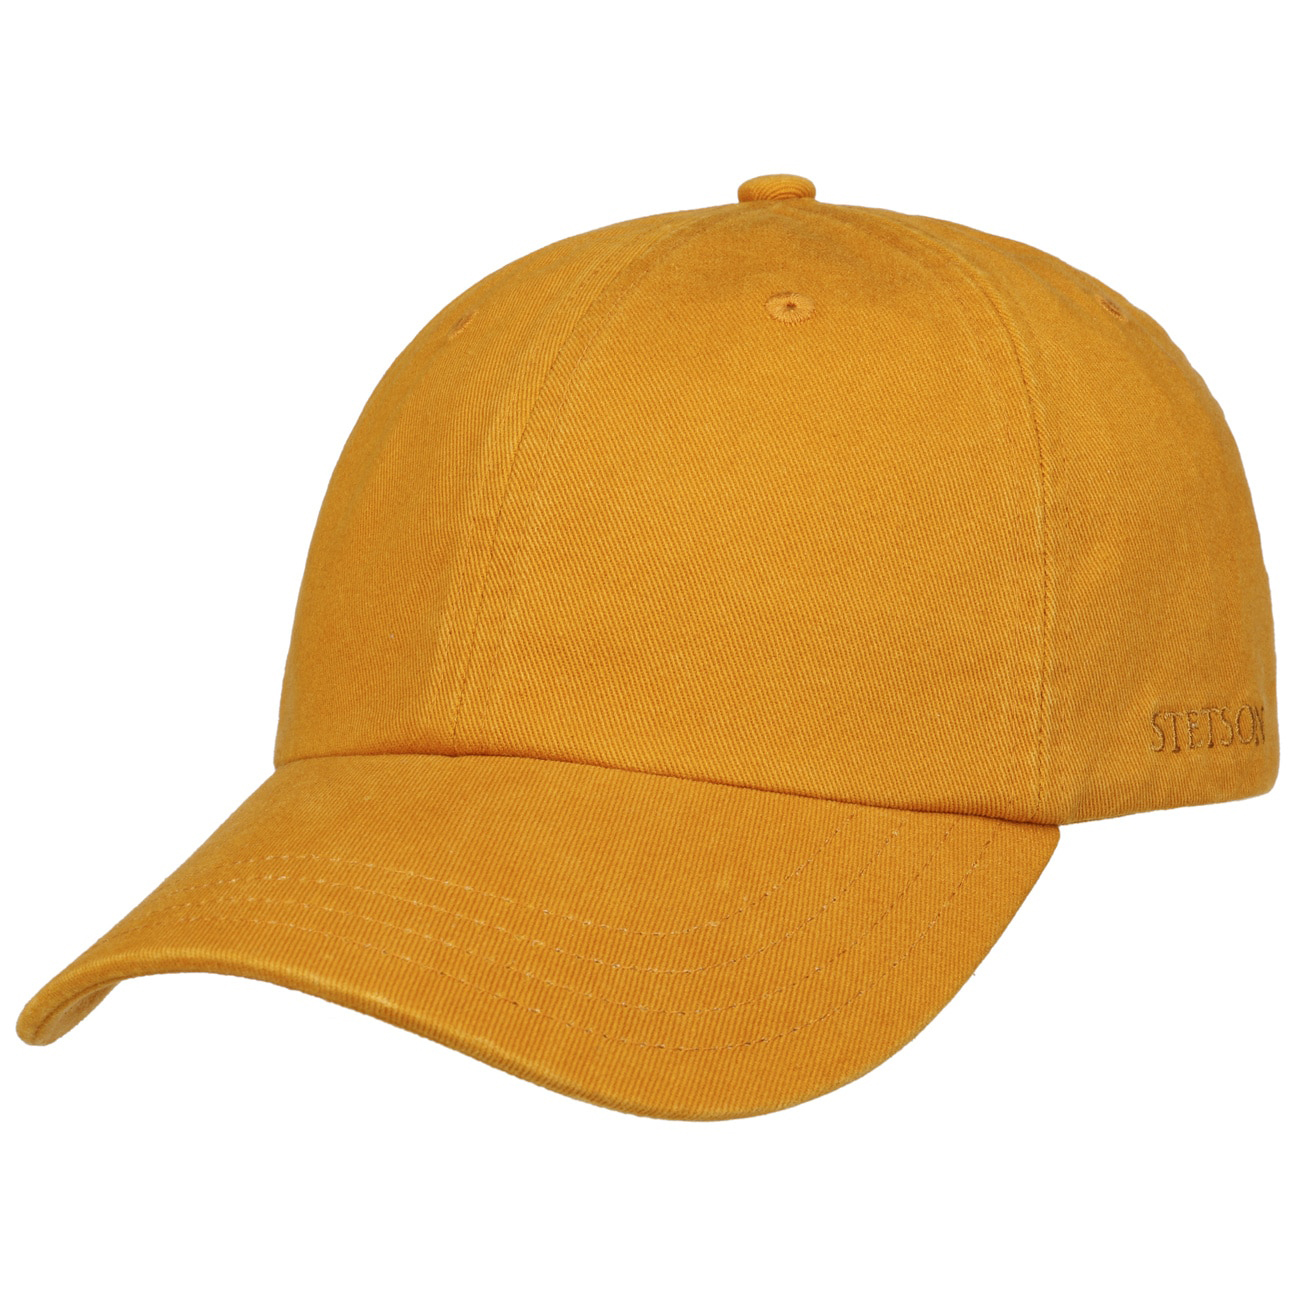 Stetson - Rector Baseball Cap - Gold